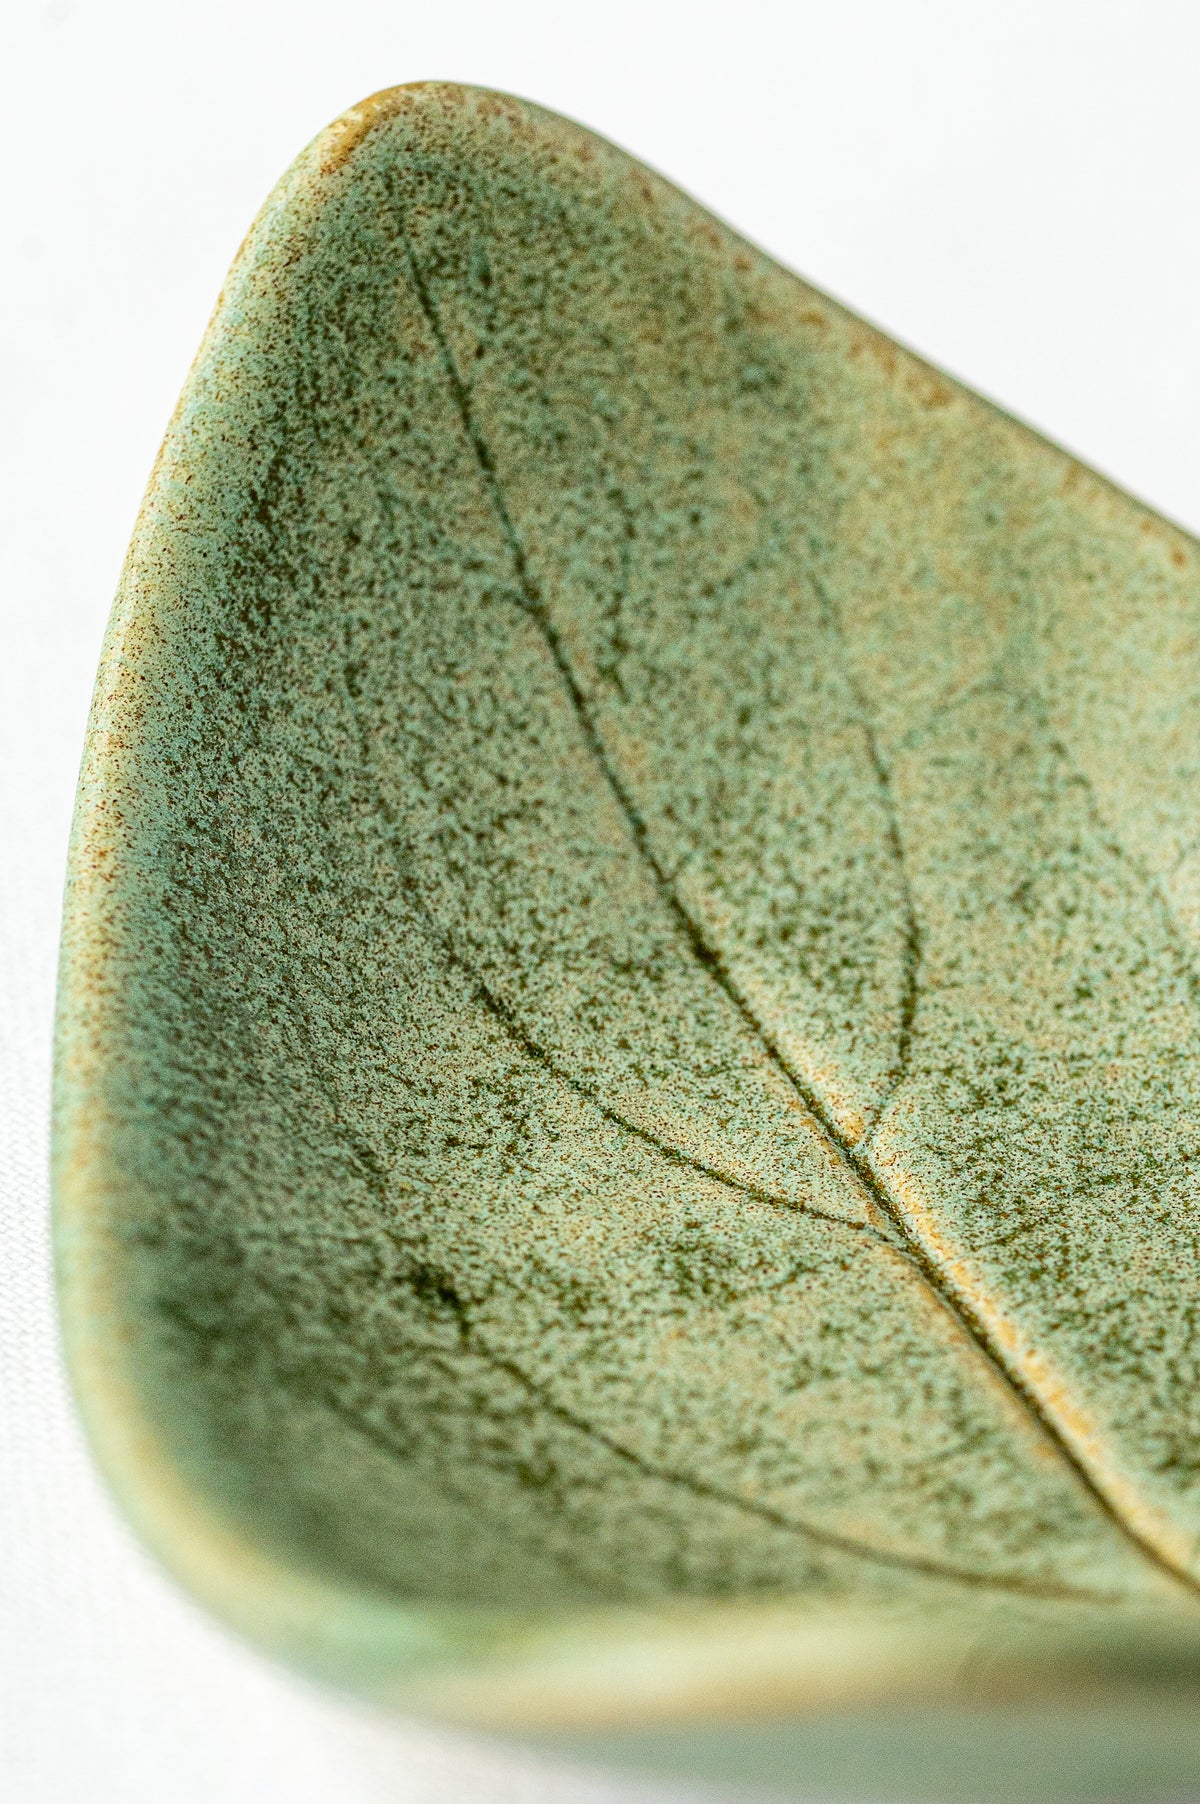 Ceramic Leaf dish